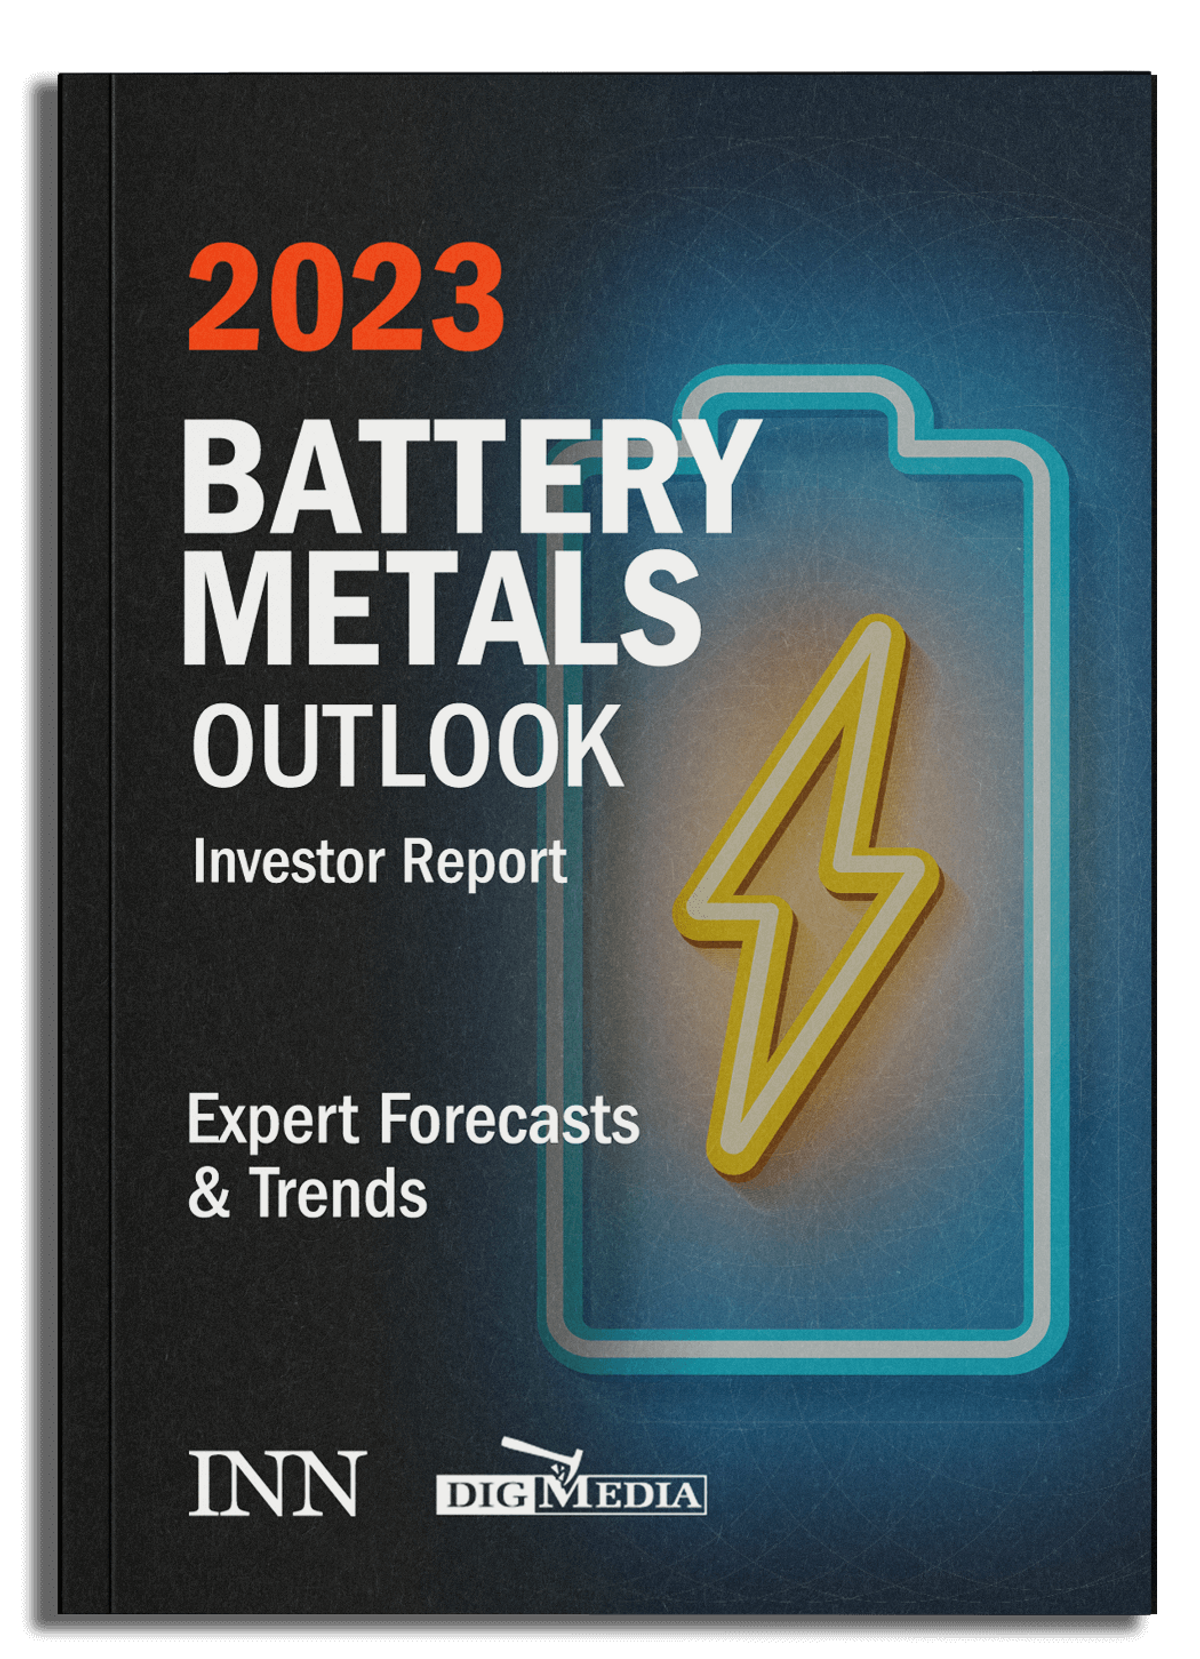 2023 Battery Metals Outlook Report (Updated!)